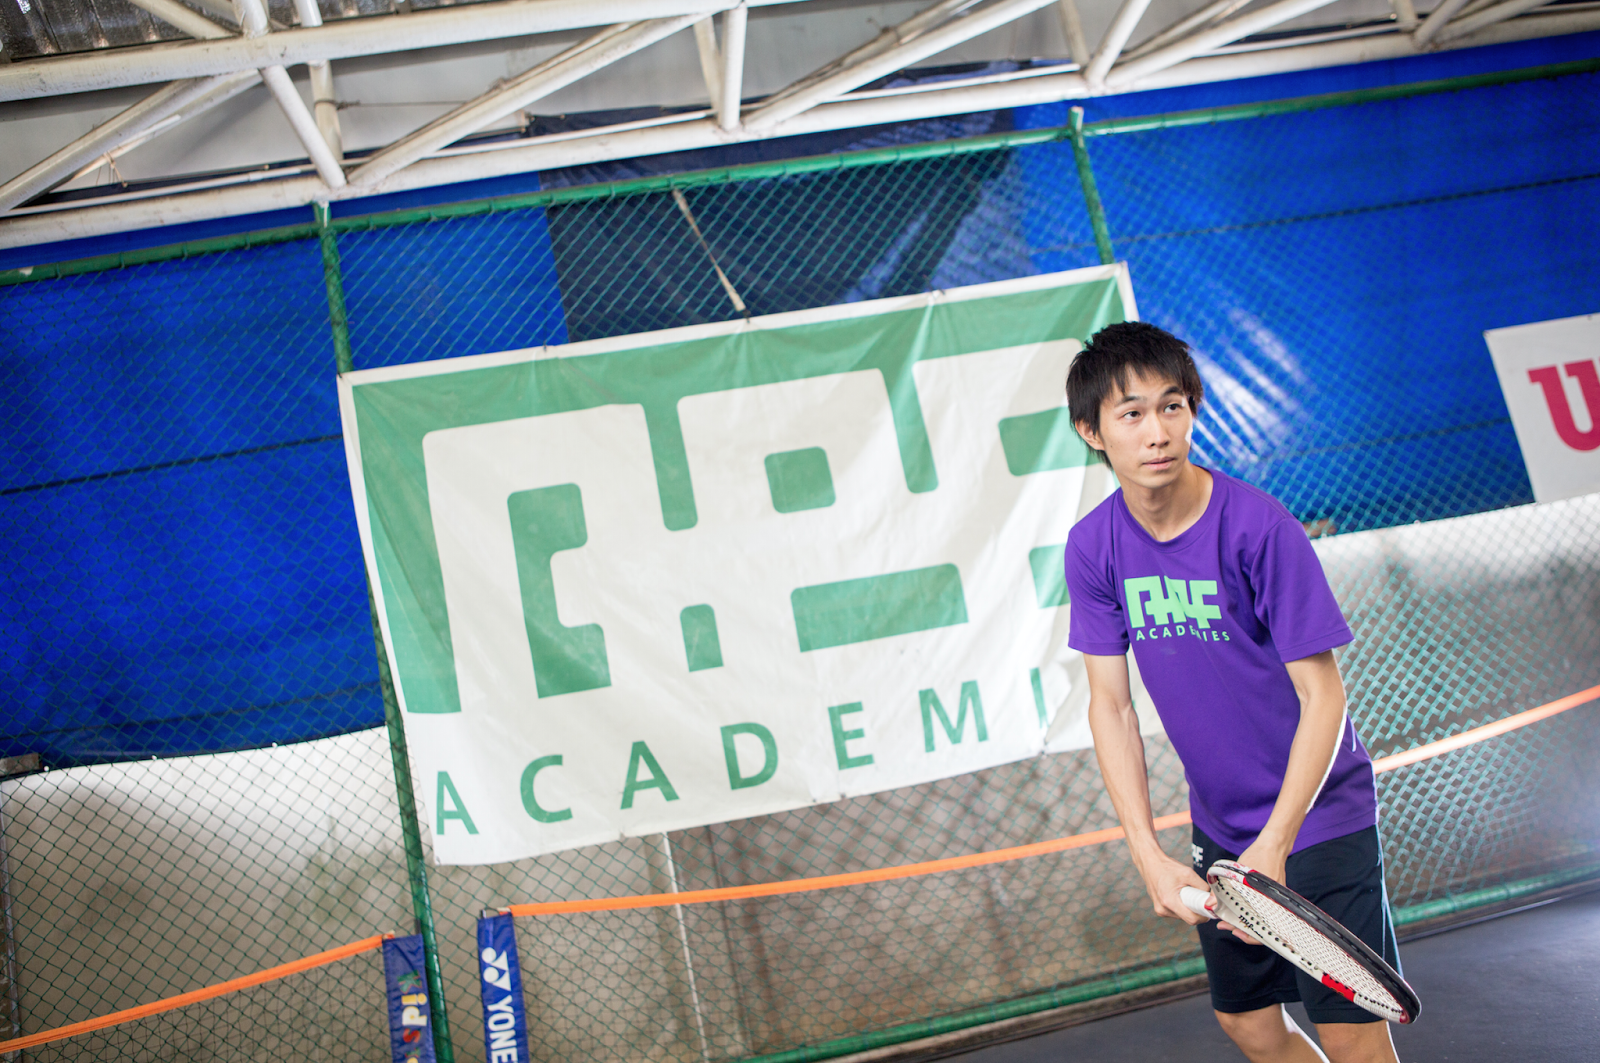 テニス初心者 サーブが上手くなる3つのポイント Apf Academies